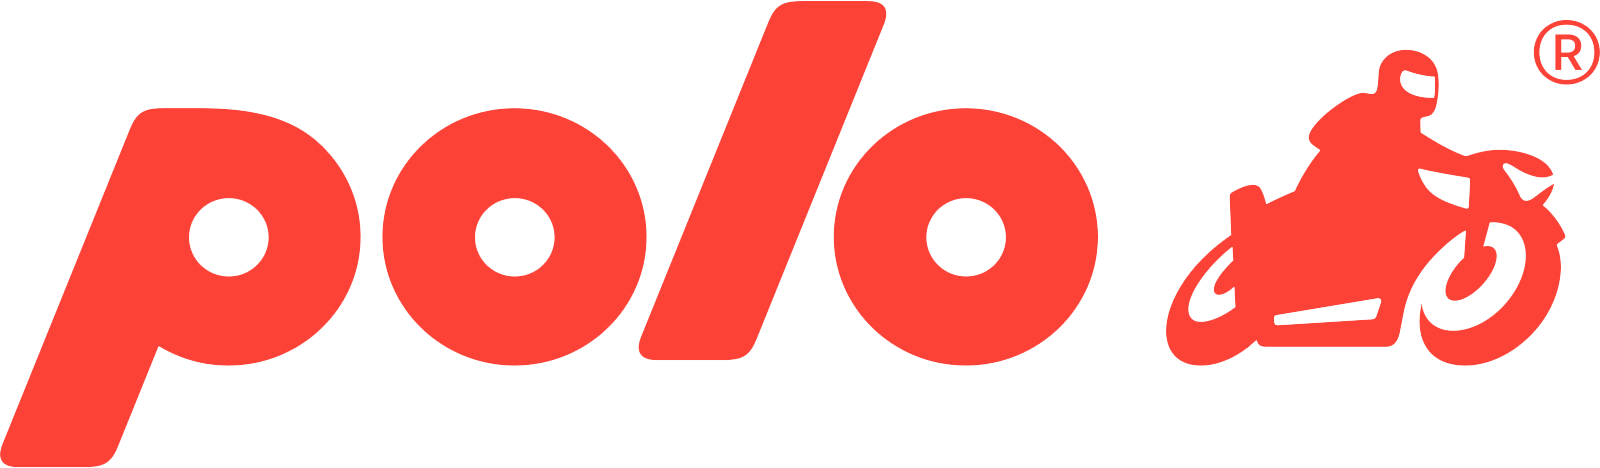 Polo motorrad Logo